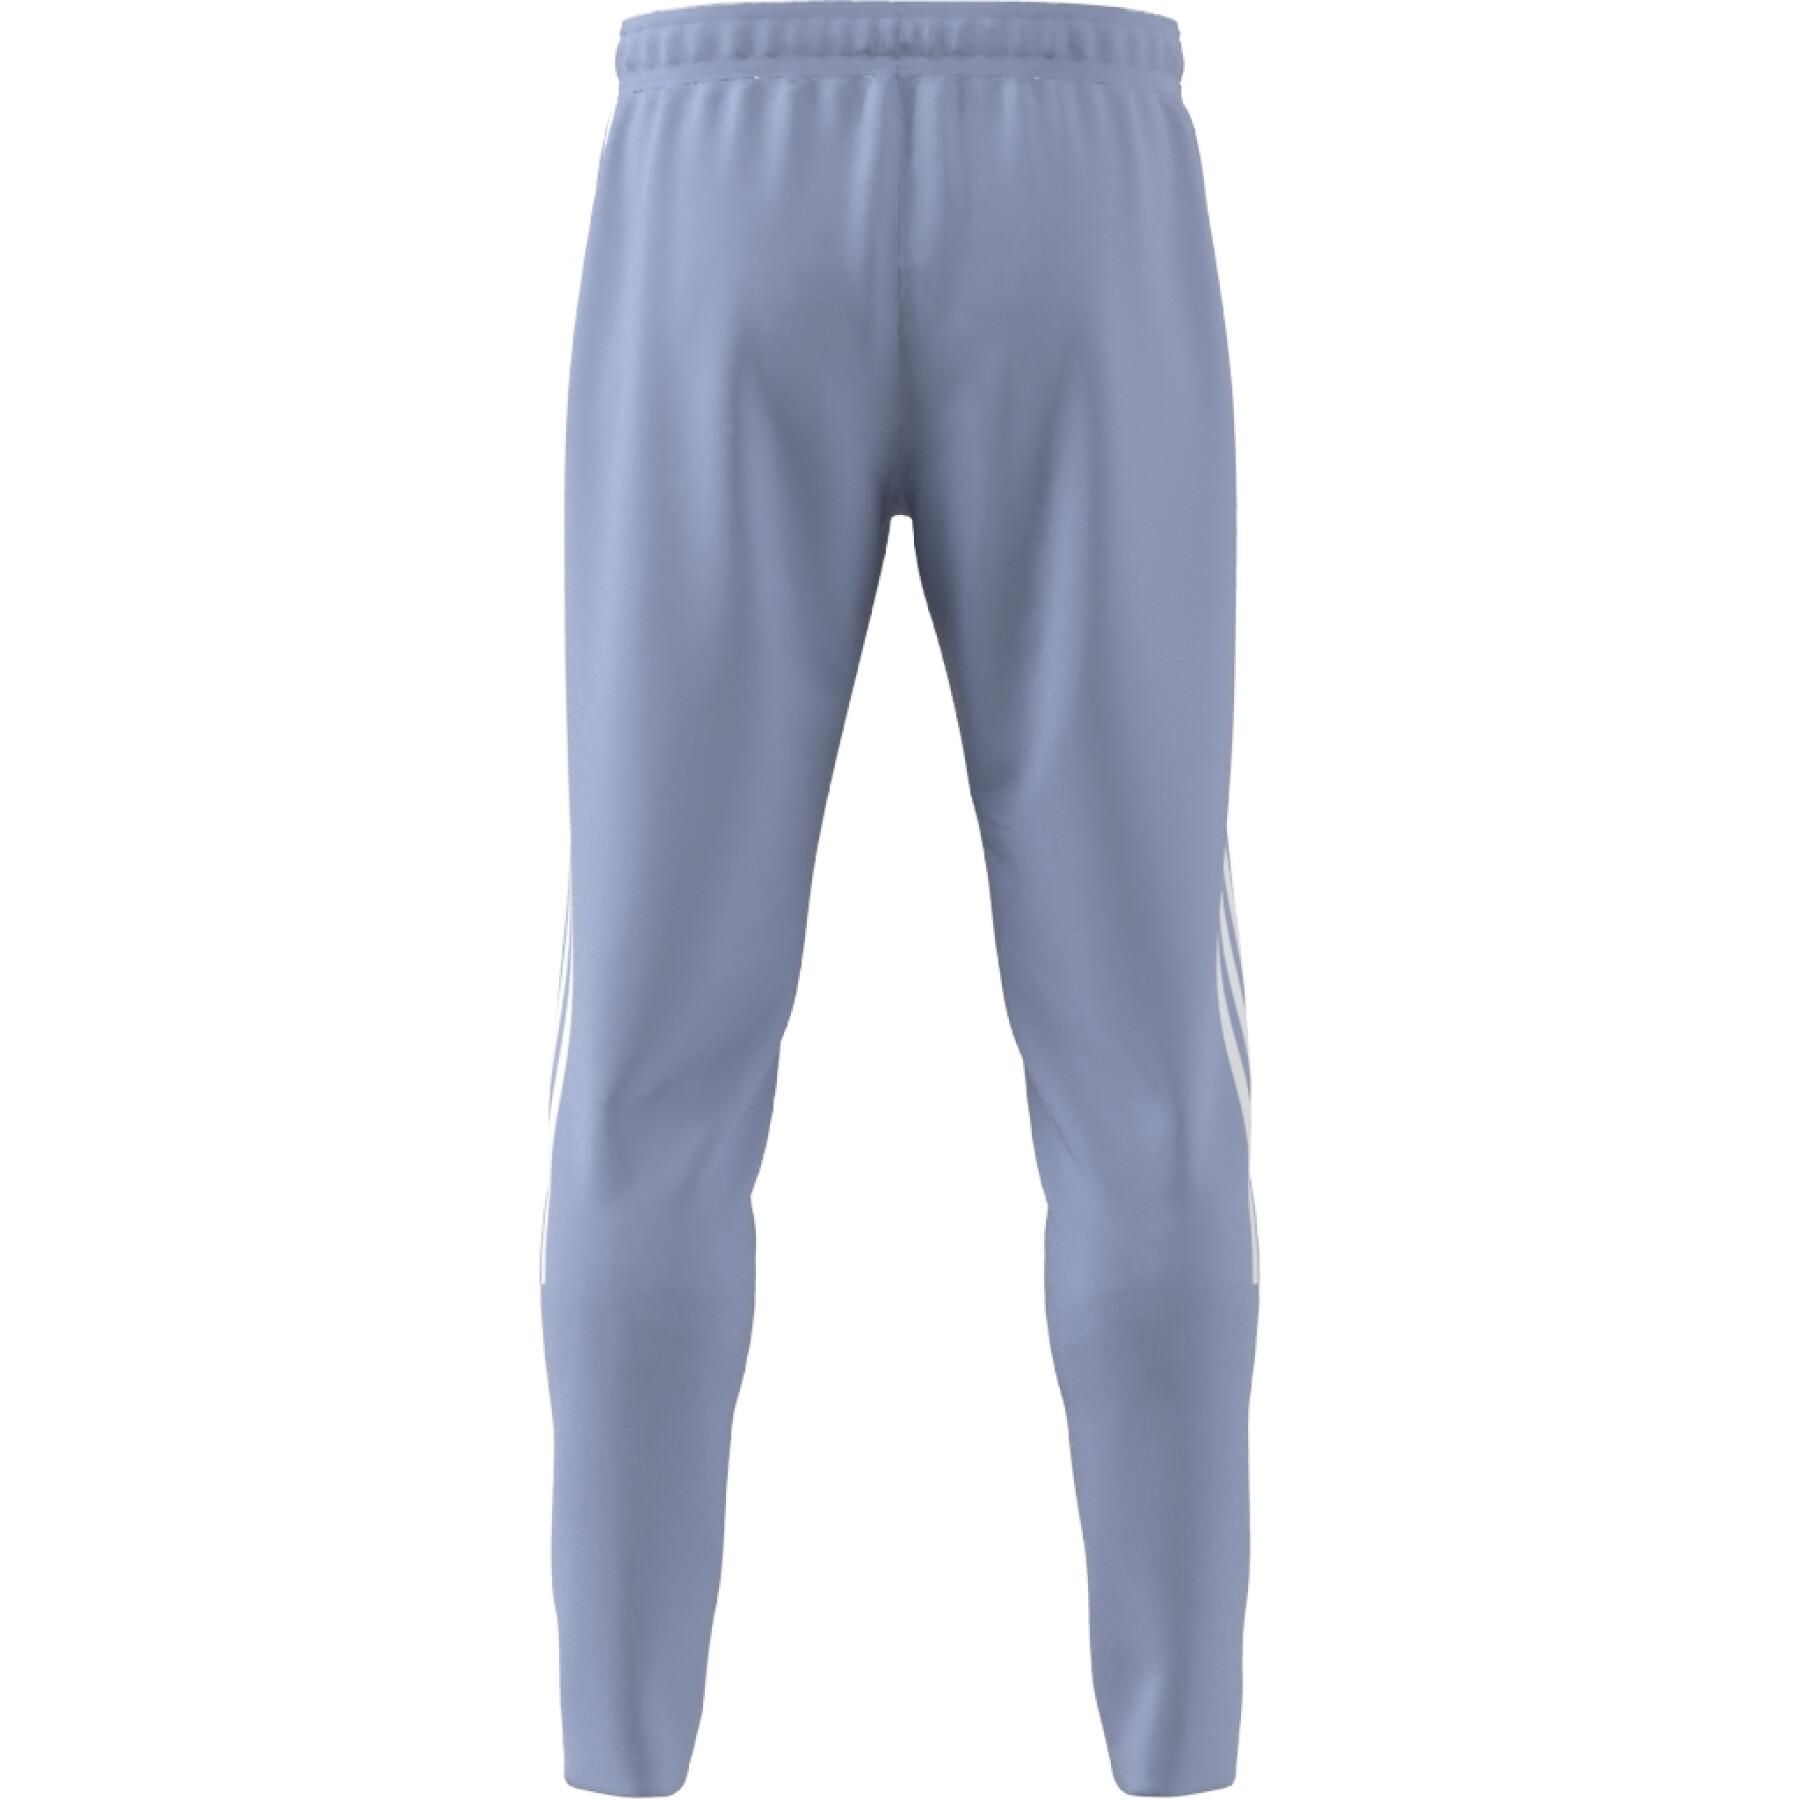 Pantalón de jogging adidas Tiro Suit-Up